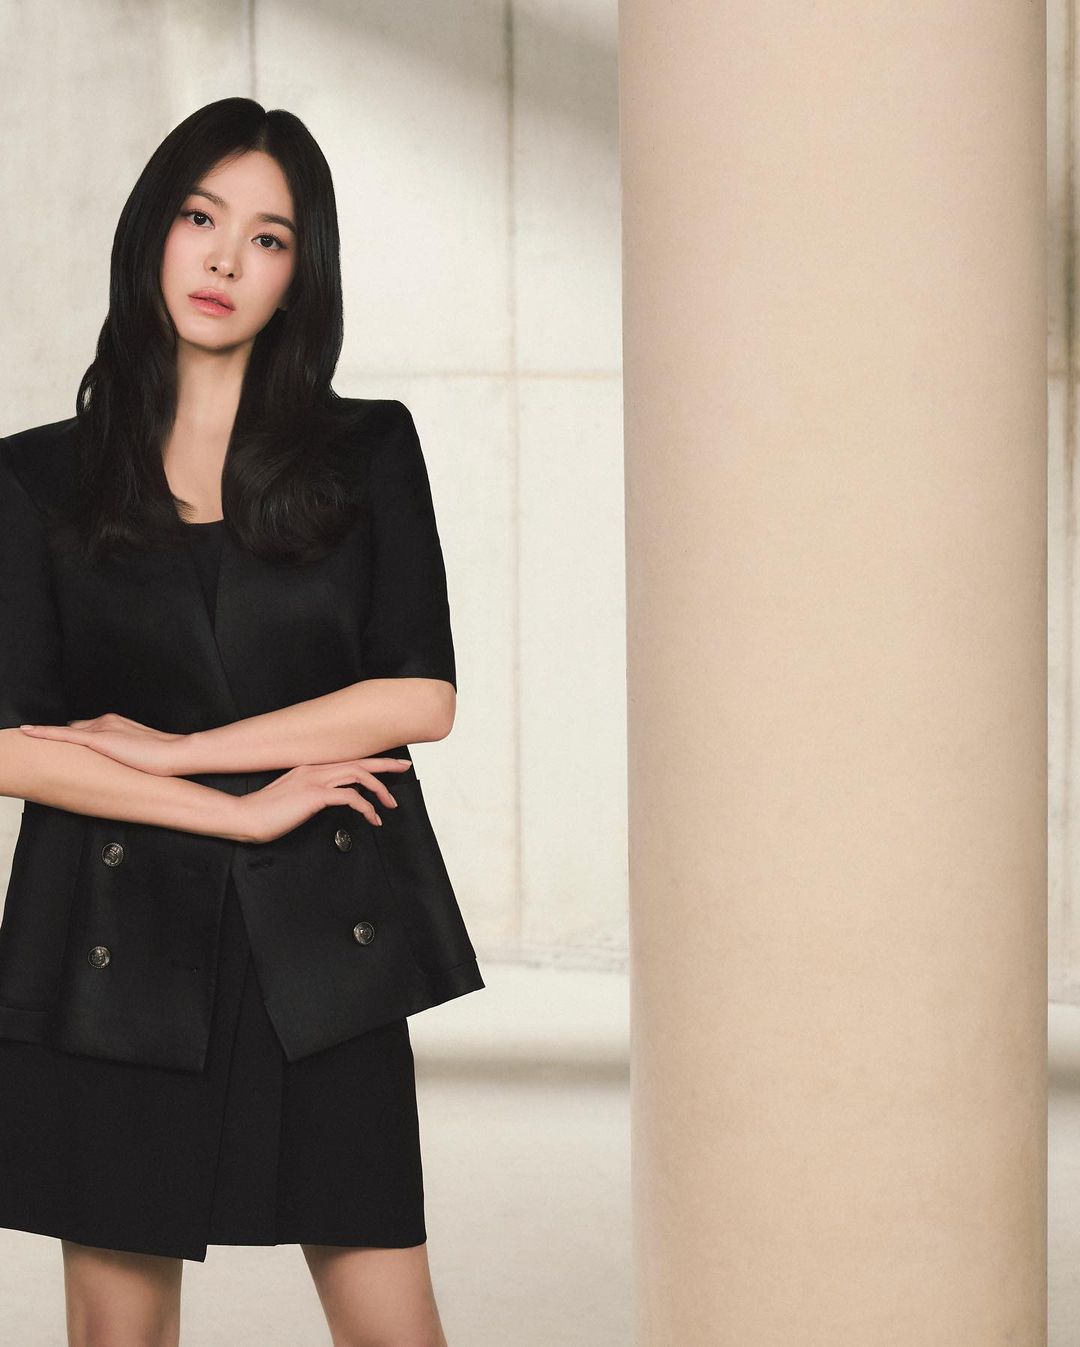 Song Hye Kyo khiến người hâm mộ thổn thức với vẻ đẹp không tuổi, đúng chuẩn tượng đài nhan sắc xứ Hàn - Ảnh 4.